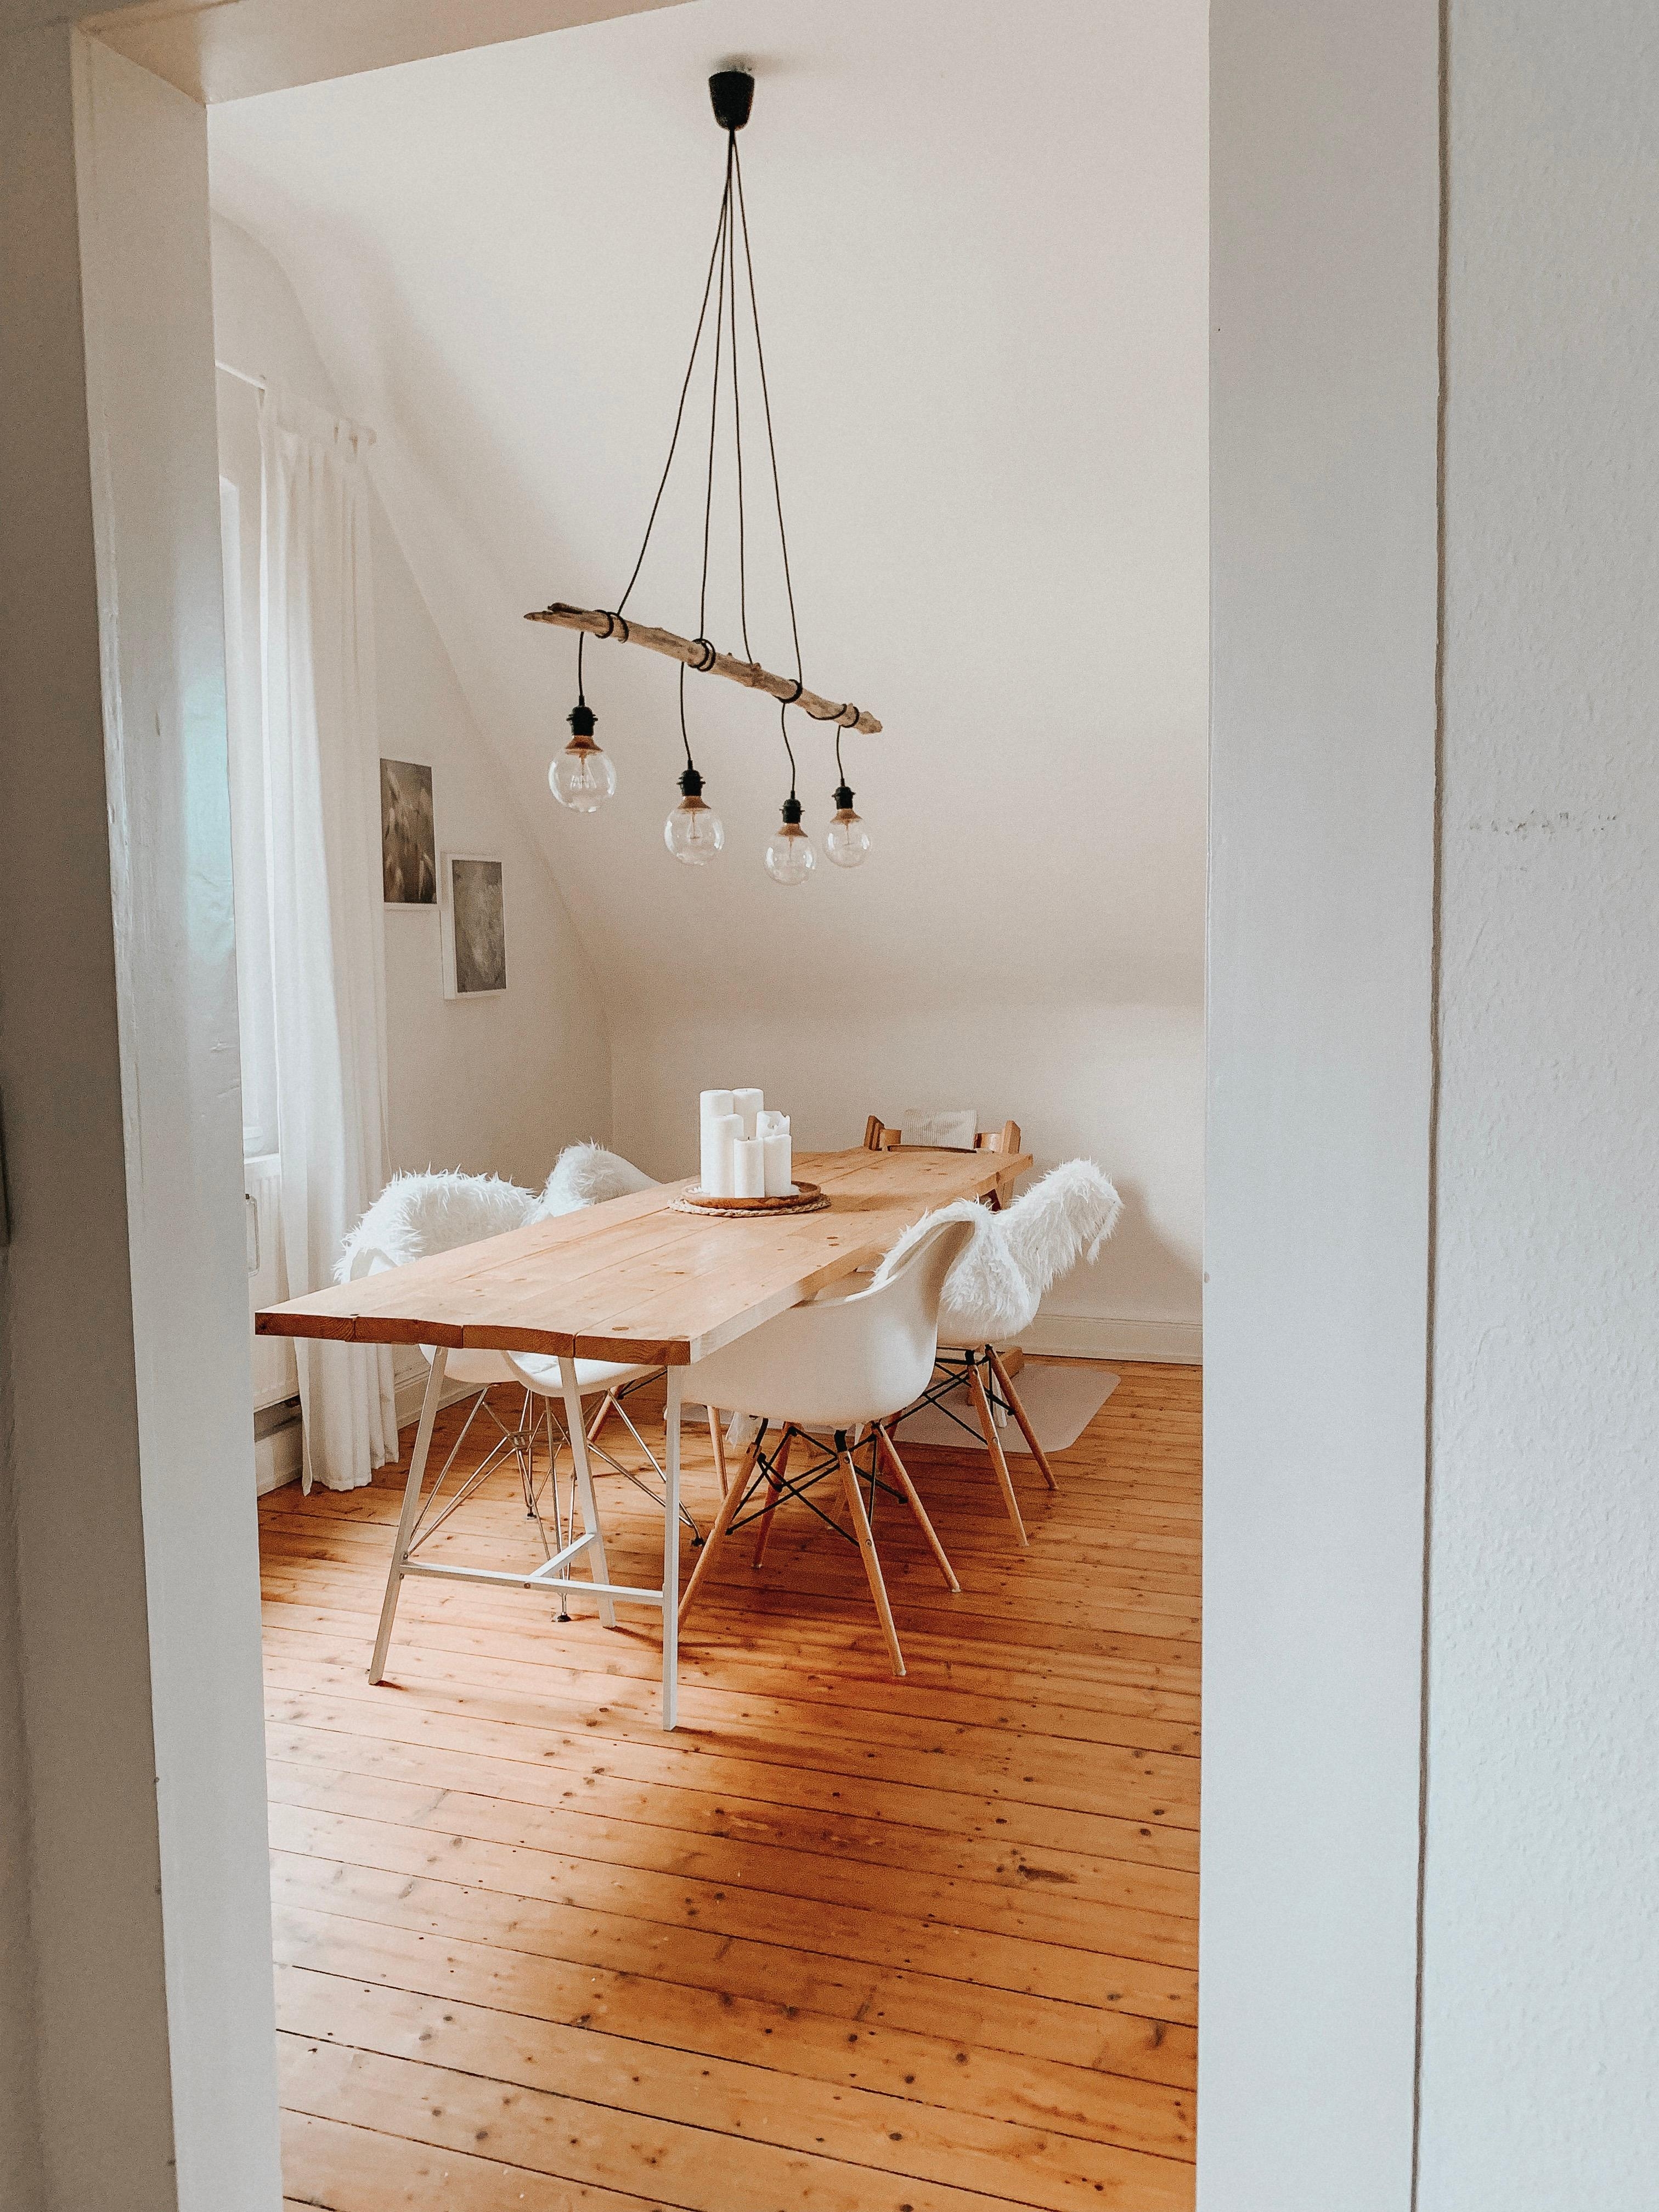 Wir haben umgestellt! Gefällt es euch? #esszimmer #nordicliving #minimalistisch